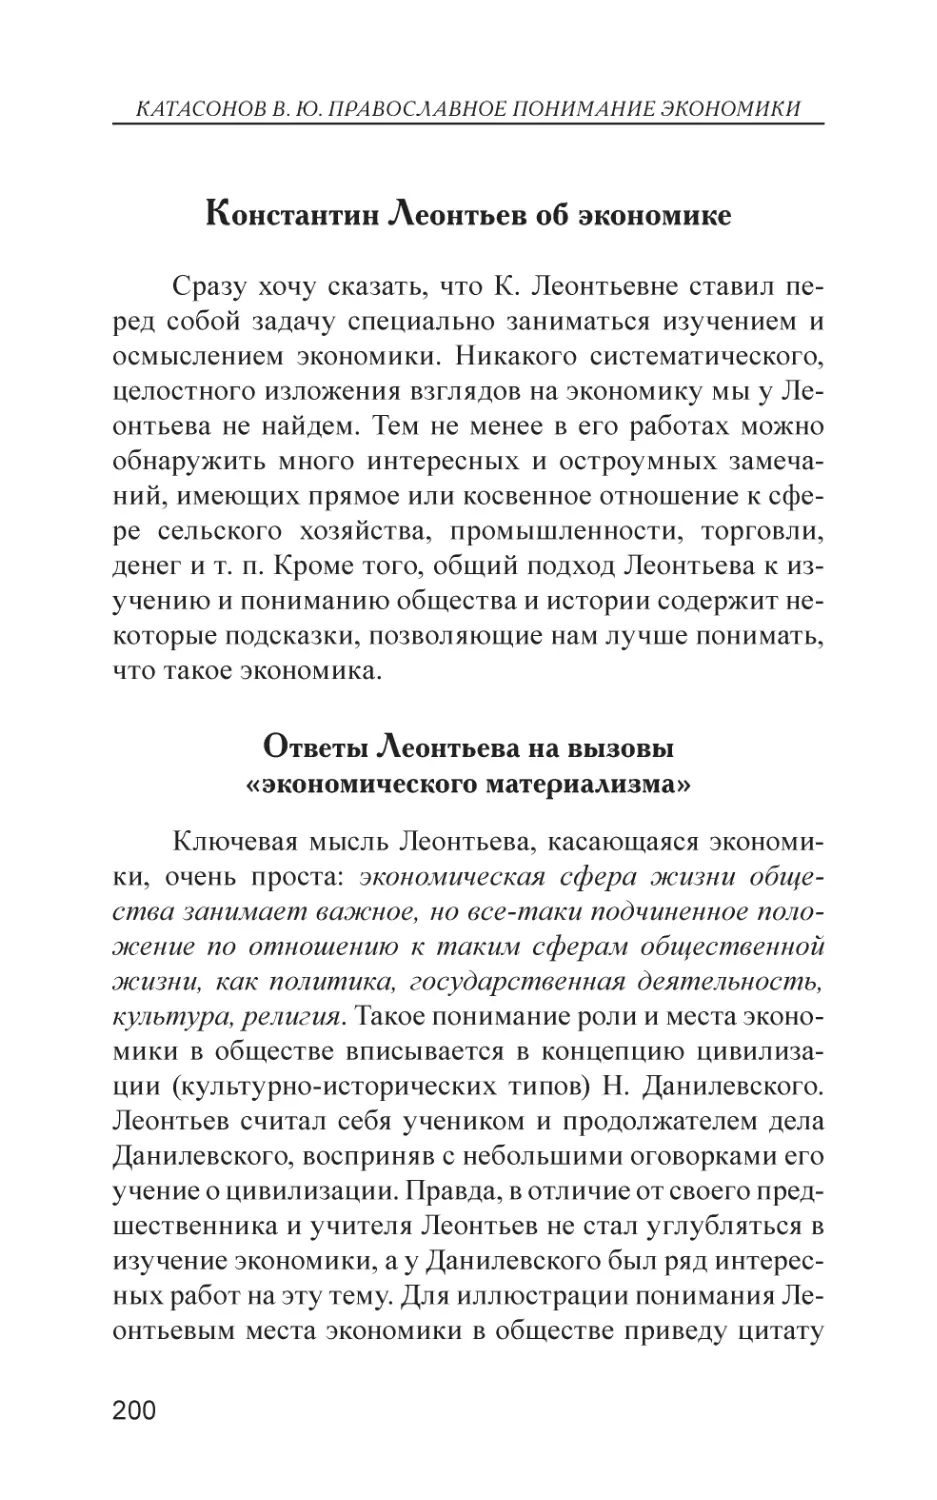 Константин Леонтьев об экономике
Ответы Леонтьева на вызовы «экономического материализма»